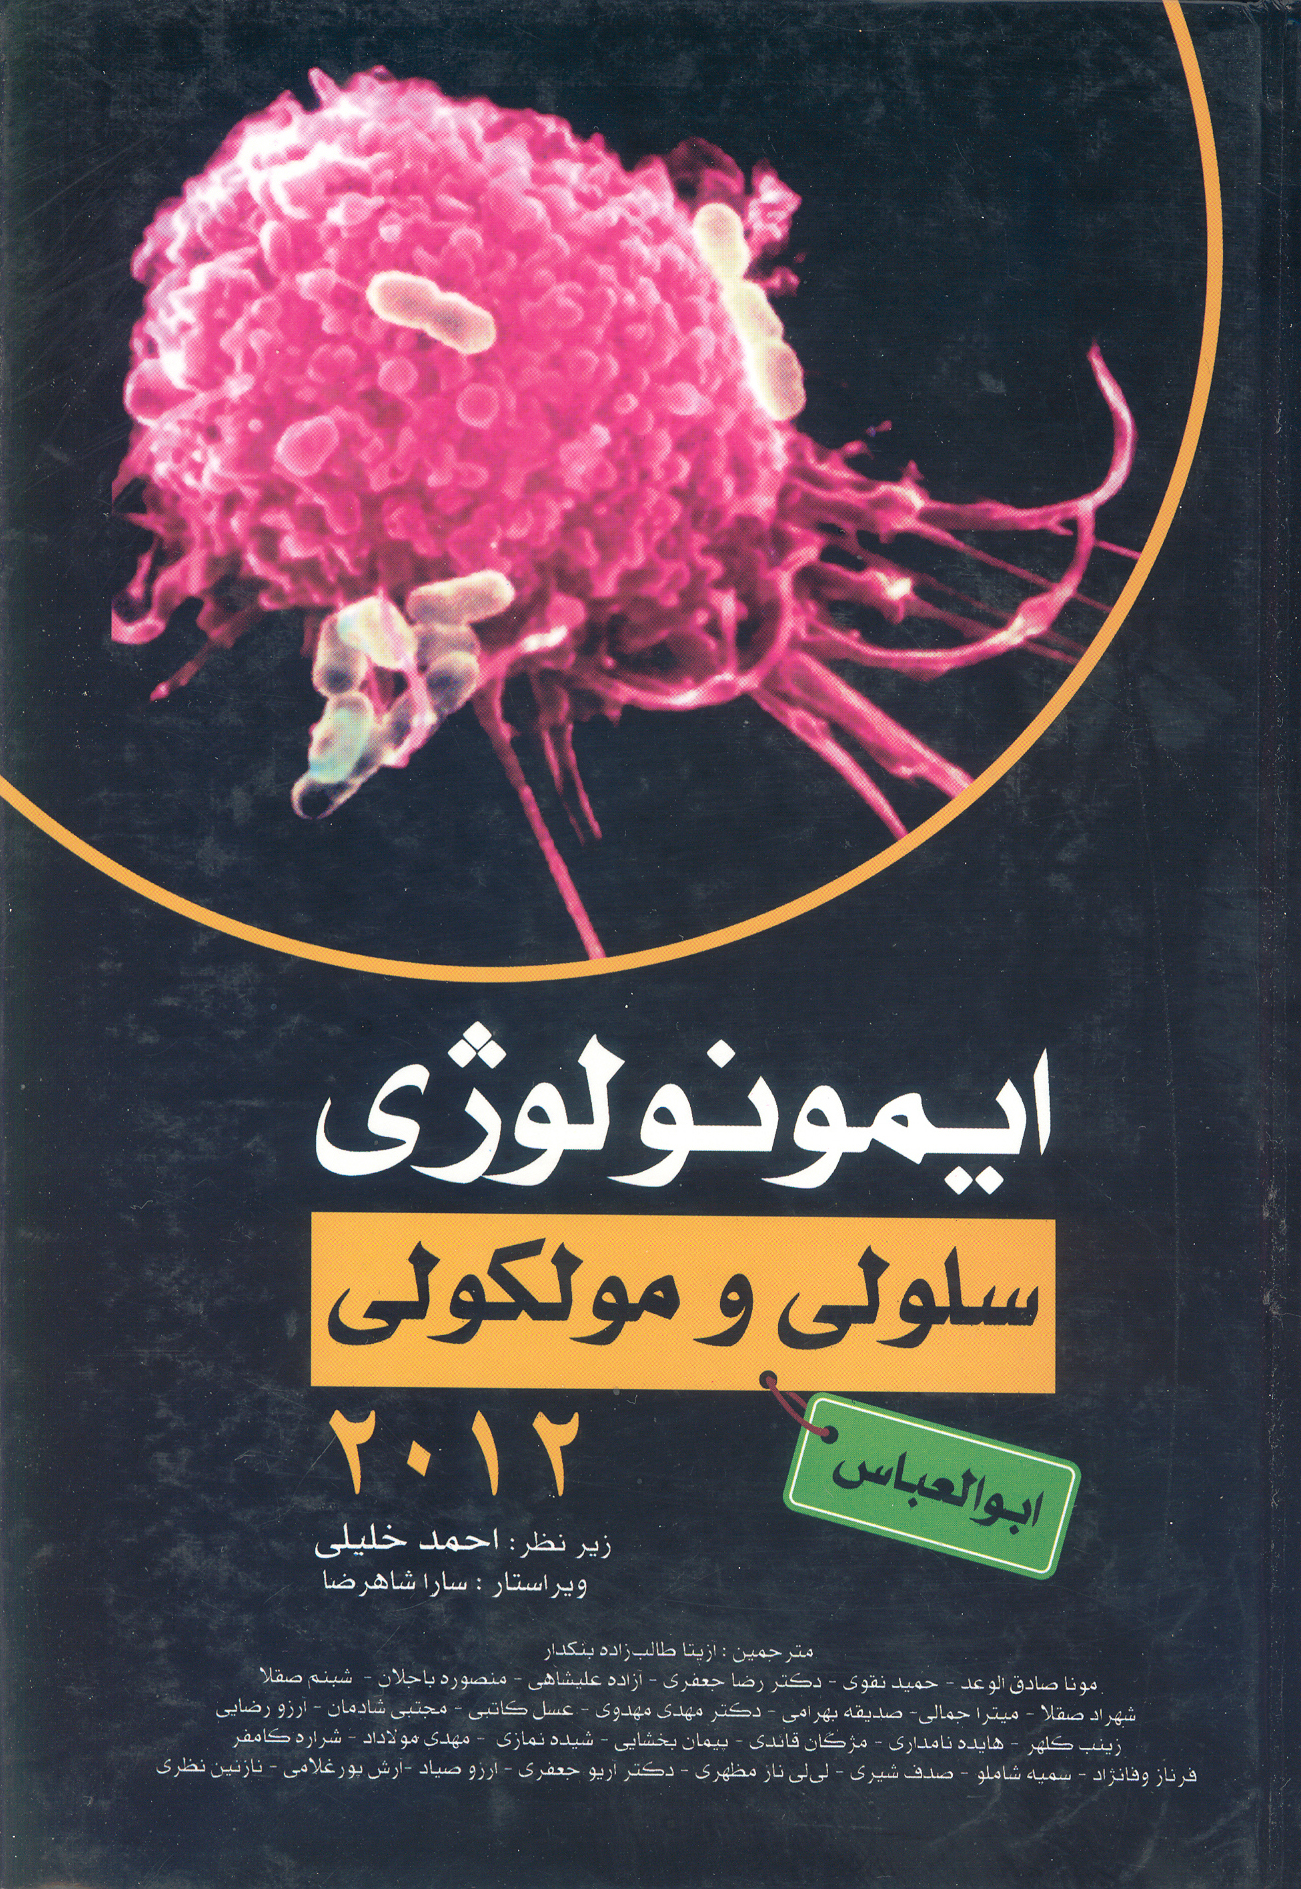 کتاب ایمونولوژی سلولی و مولکولی ابوالعباس 2012 (نشر گروه تالیفی دکتر خلیلی)